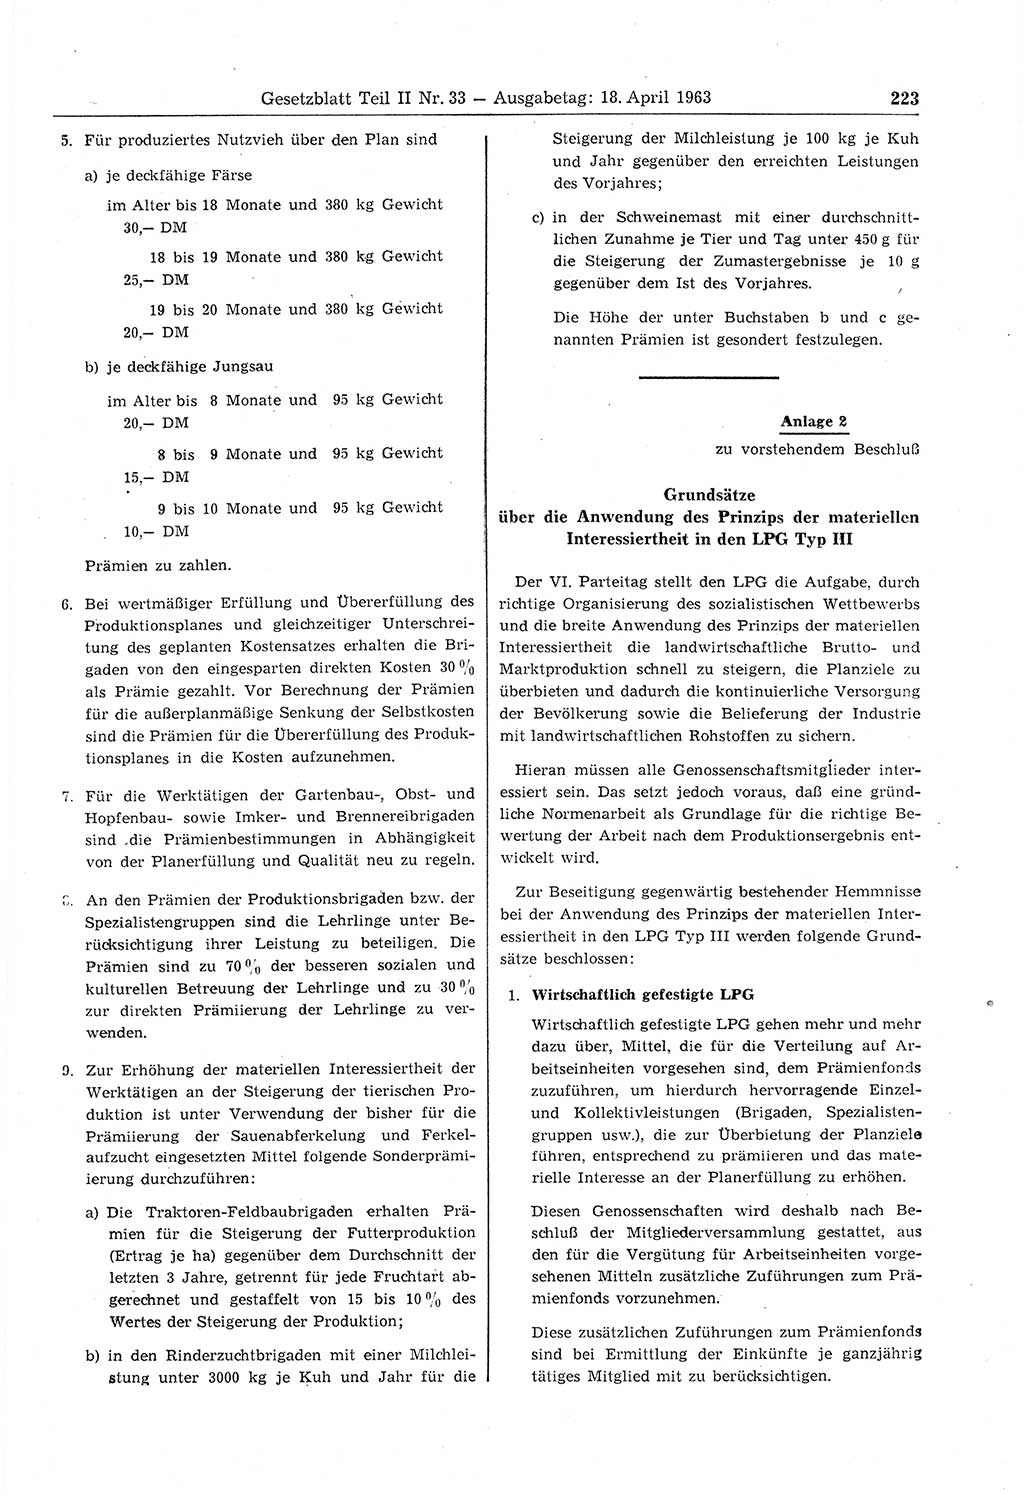 Gesetzblatt (GBl.) der Deutschen Demokratischen Republik (DDR) Teil ⅠⅠ 1963, Seite 223 (GBl. DDR ⅠⅠ 1963, S. 223)